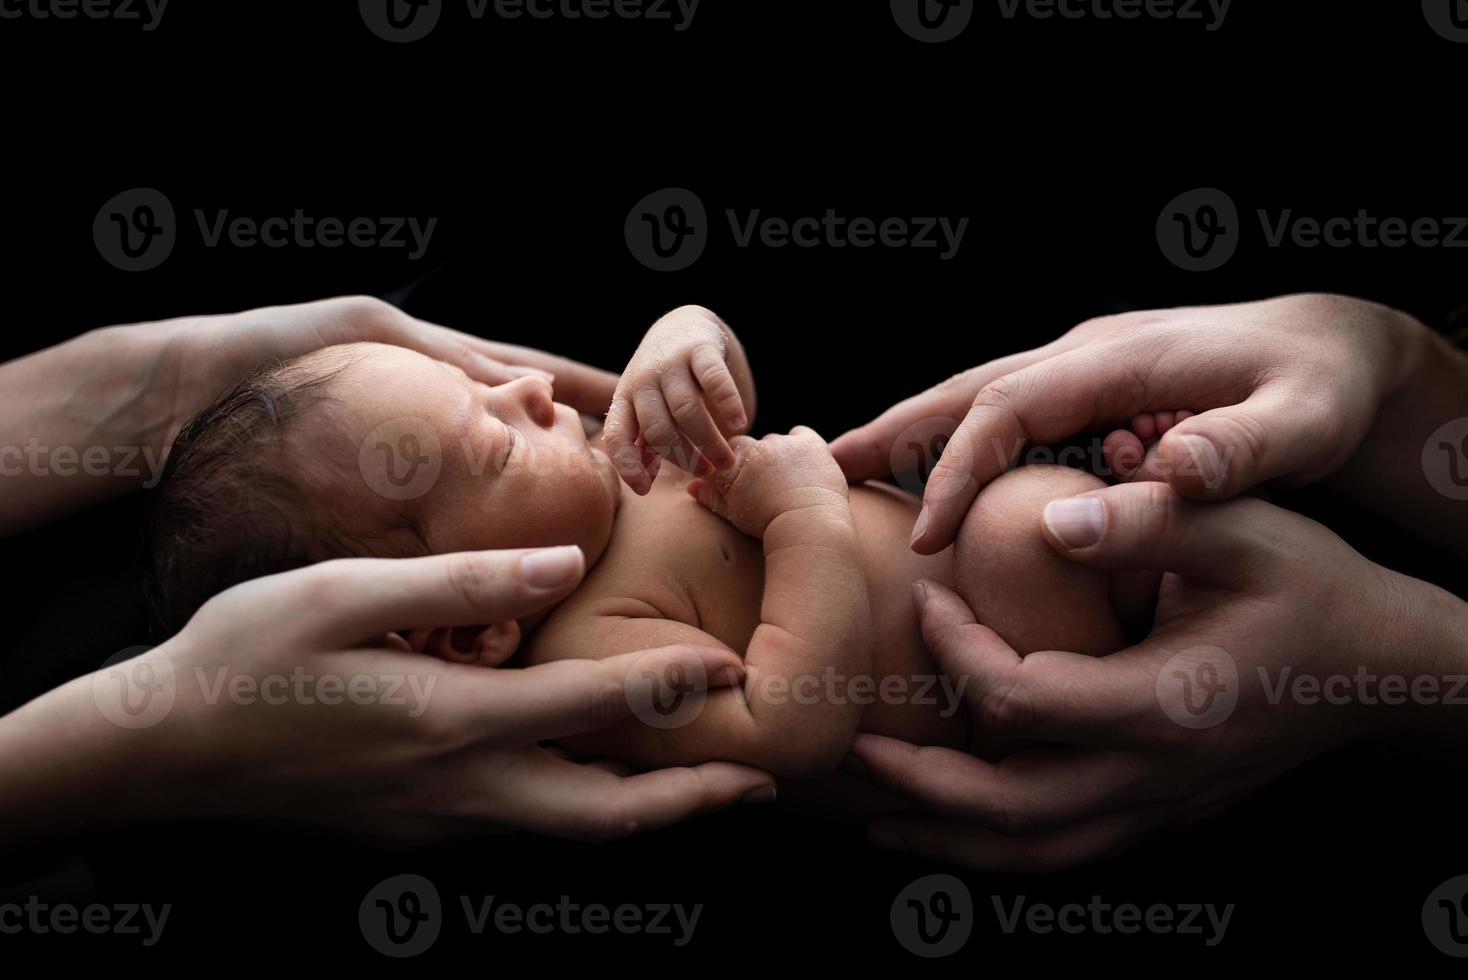 föräldrar håller sin nyfödda son i sina armar. bild tagen på en mörk bakgrund. foto